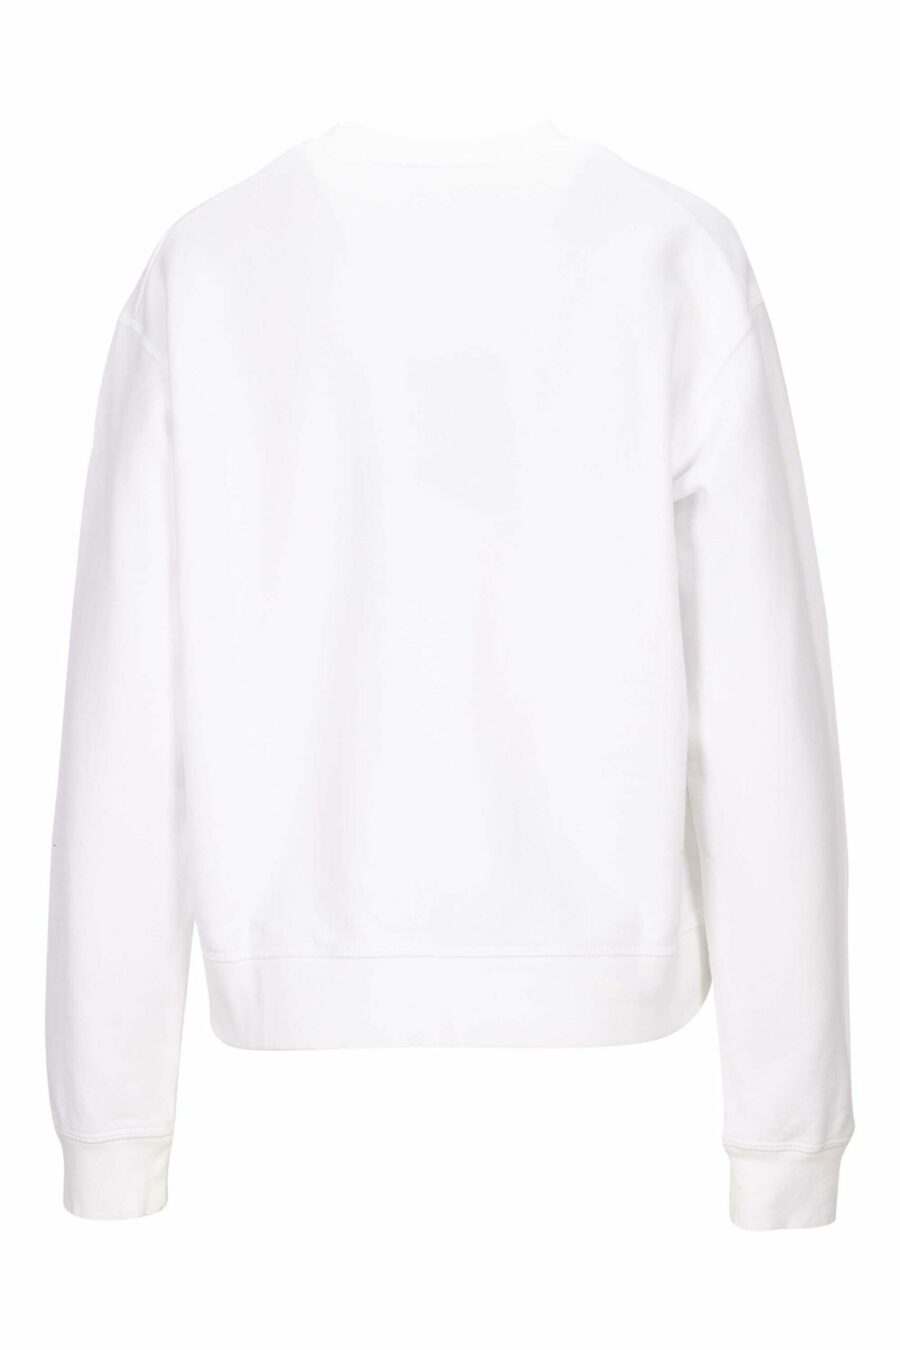 White sweatshirt with "icon darling" maxilogo - 8054148401849 1 scaled